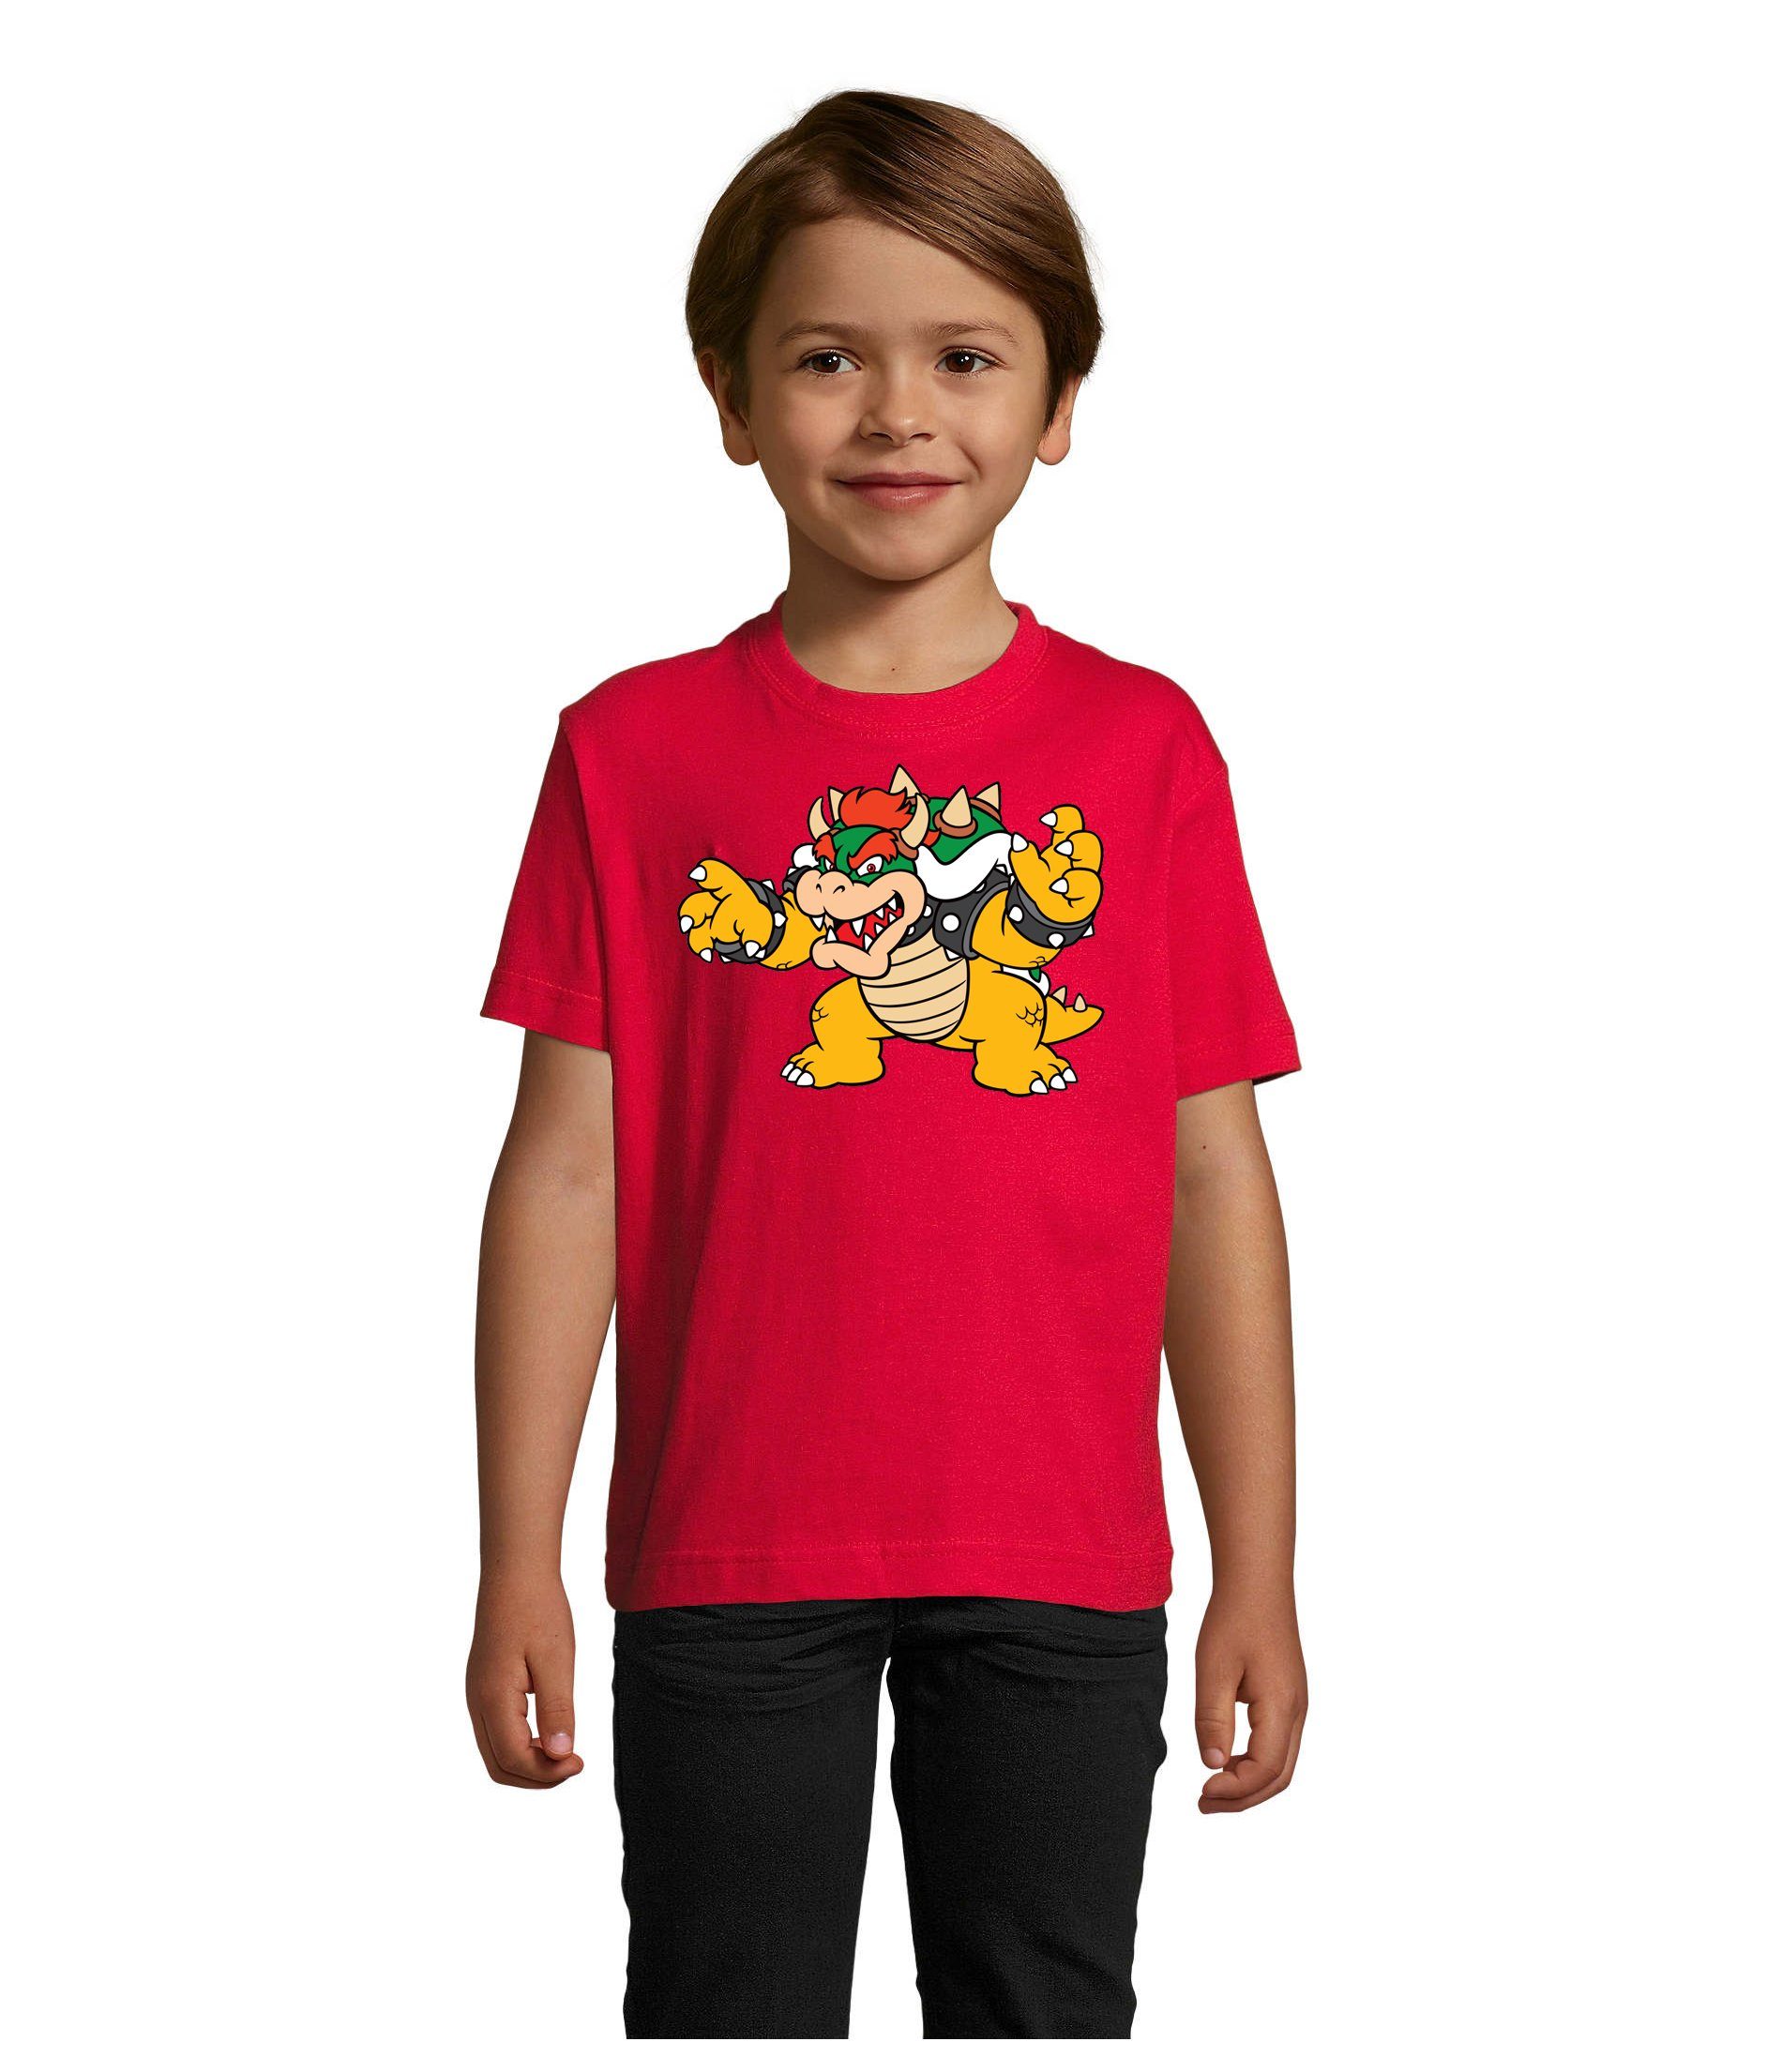 Blondie & Brownie T-Shirt Kinder Bowser Nintendo Mario Yoshi Luigi Game Gamer Konsole Rot